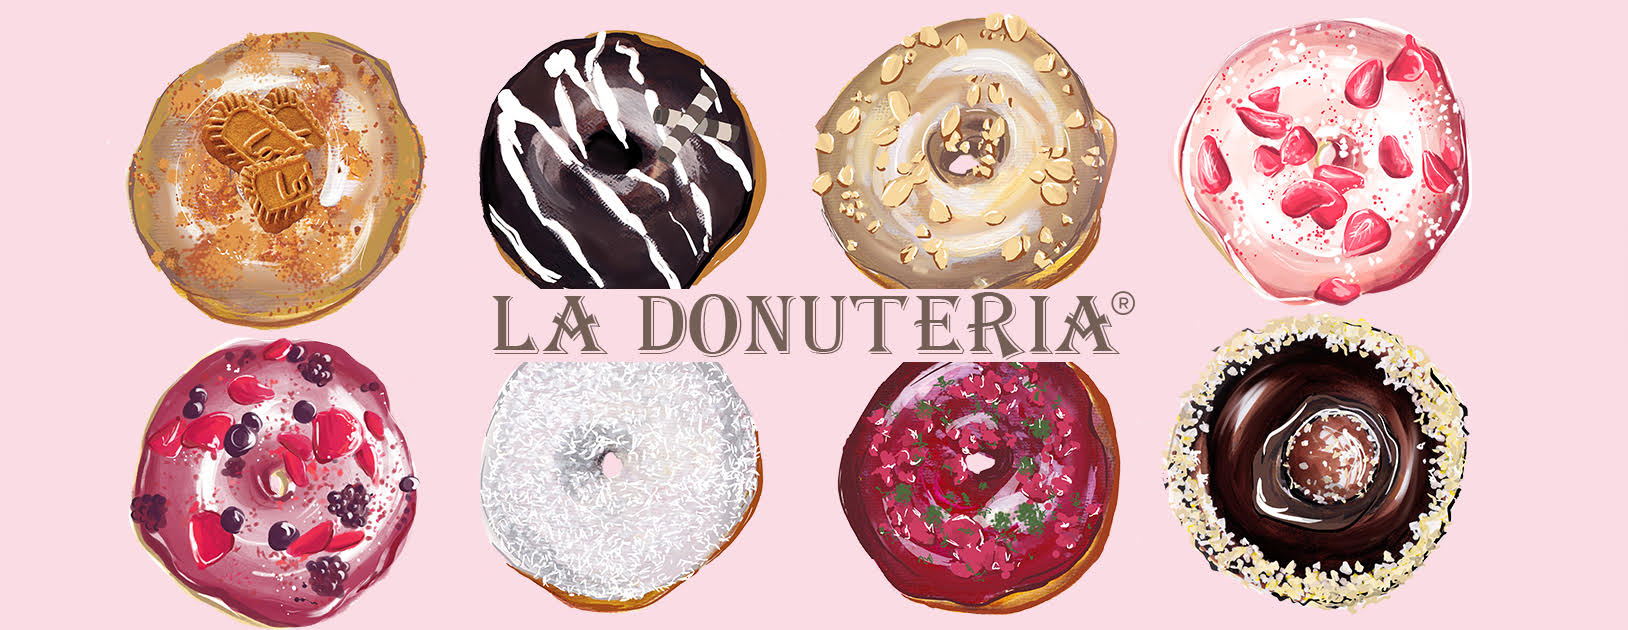 La Donuteria -  Donuts & Coffee